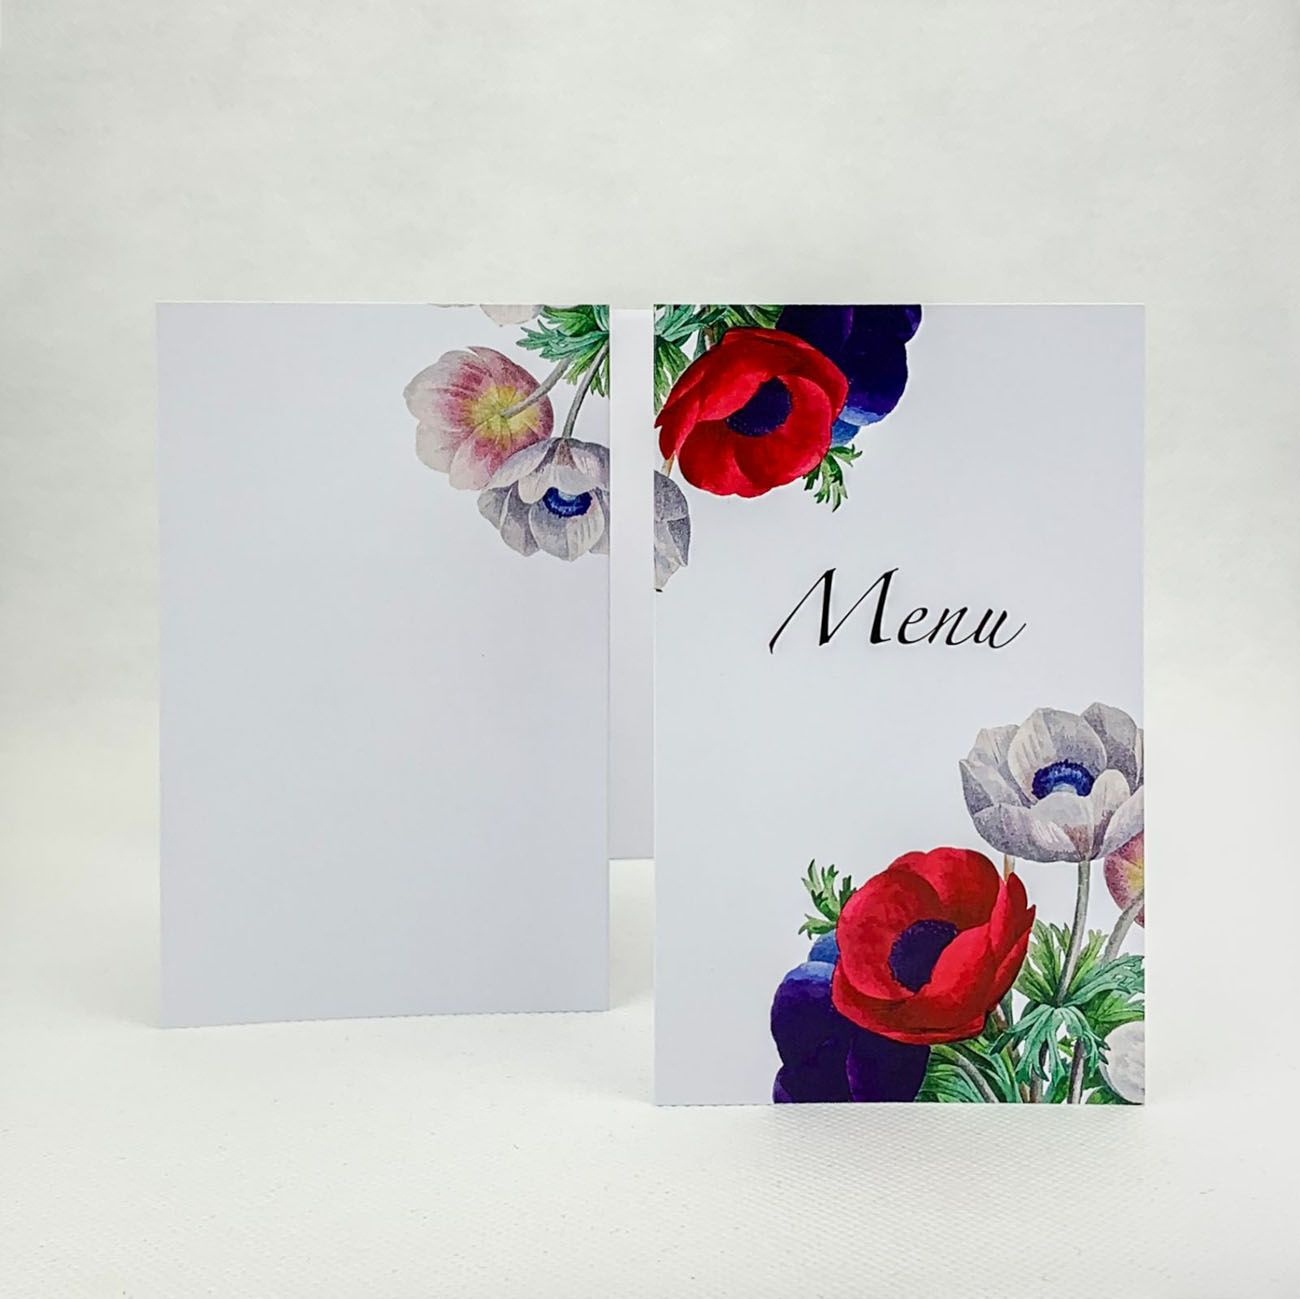 Svatební menu s barevnými květy sasanek - M4011